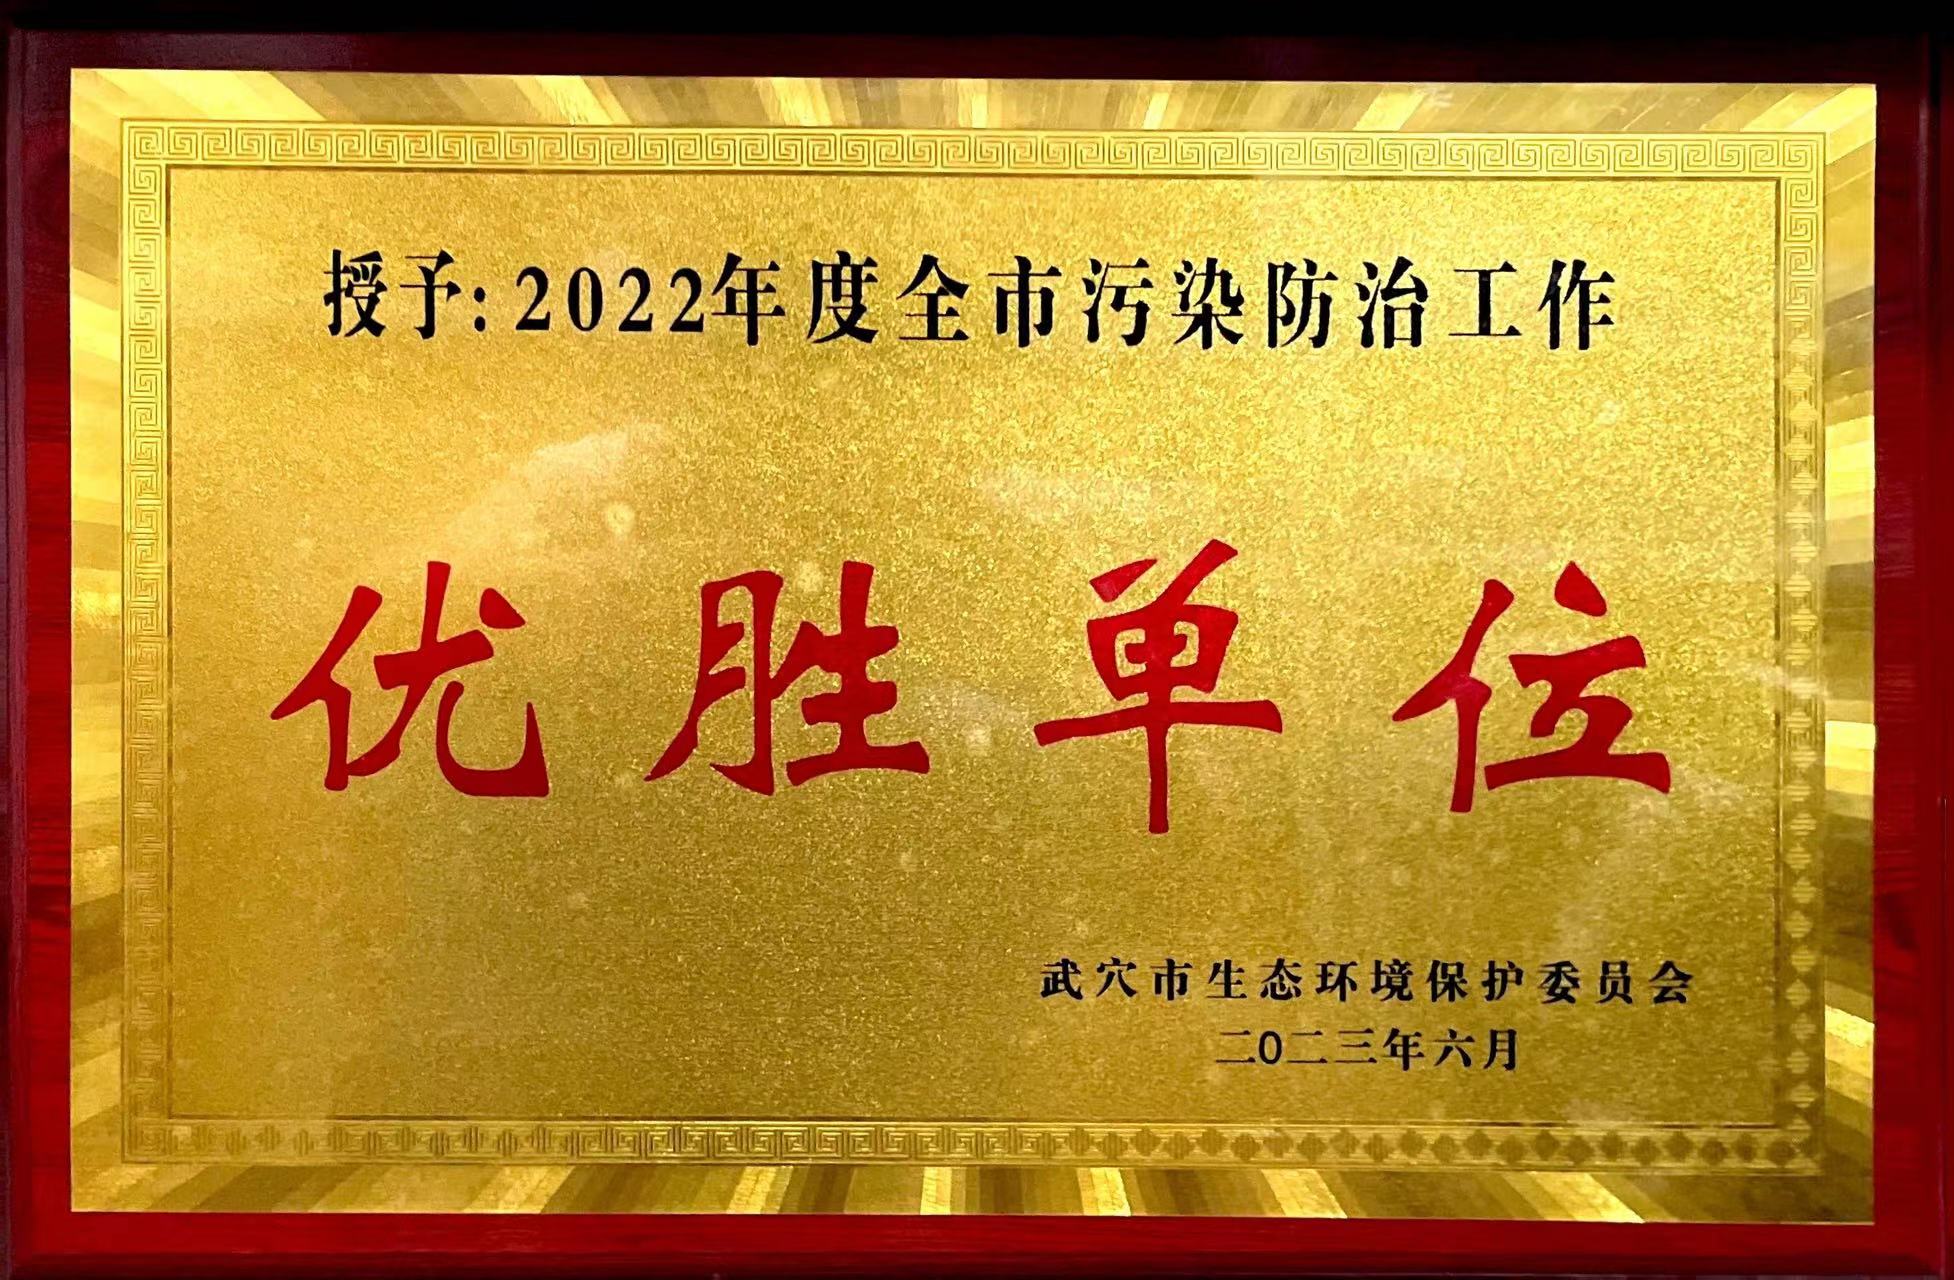 黄冈亚东荣获武穴市生态环境保护委员会所颁发的“2022年度全市污染防治工作优胜单位”奖牌。